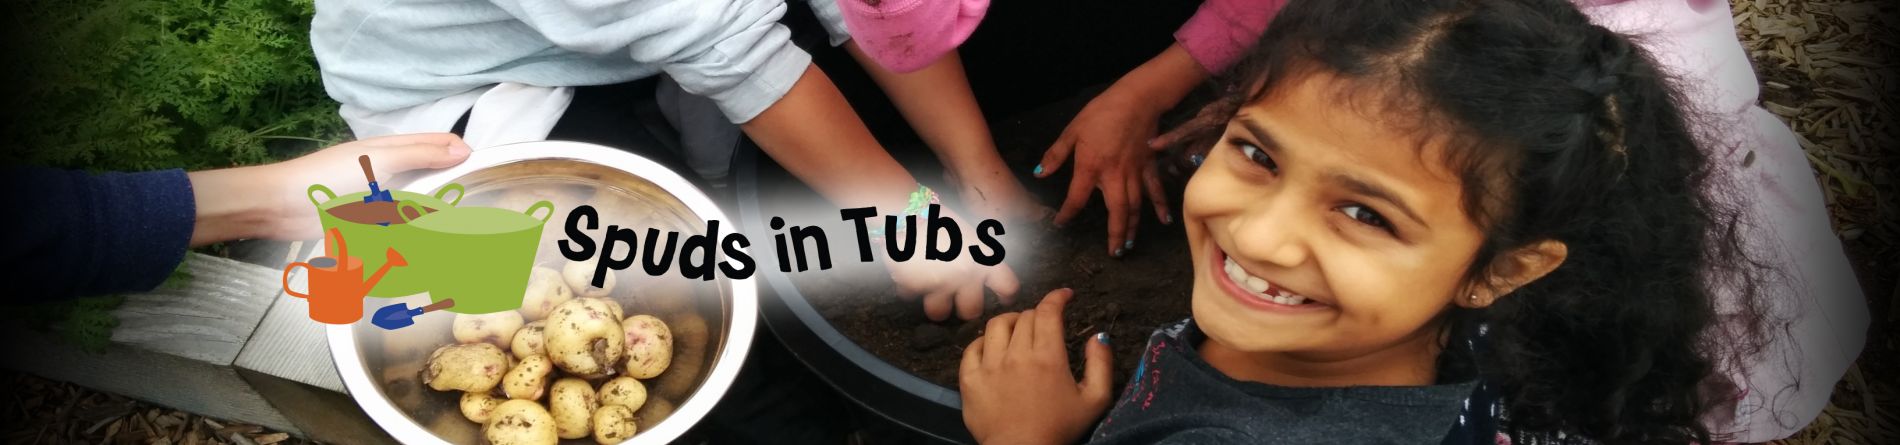 Spuds in Tubs